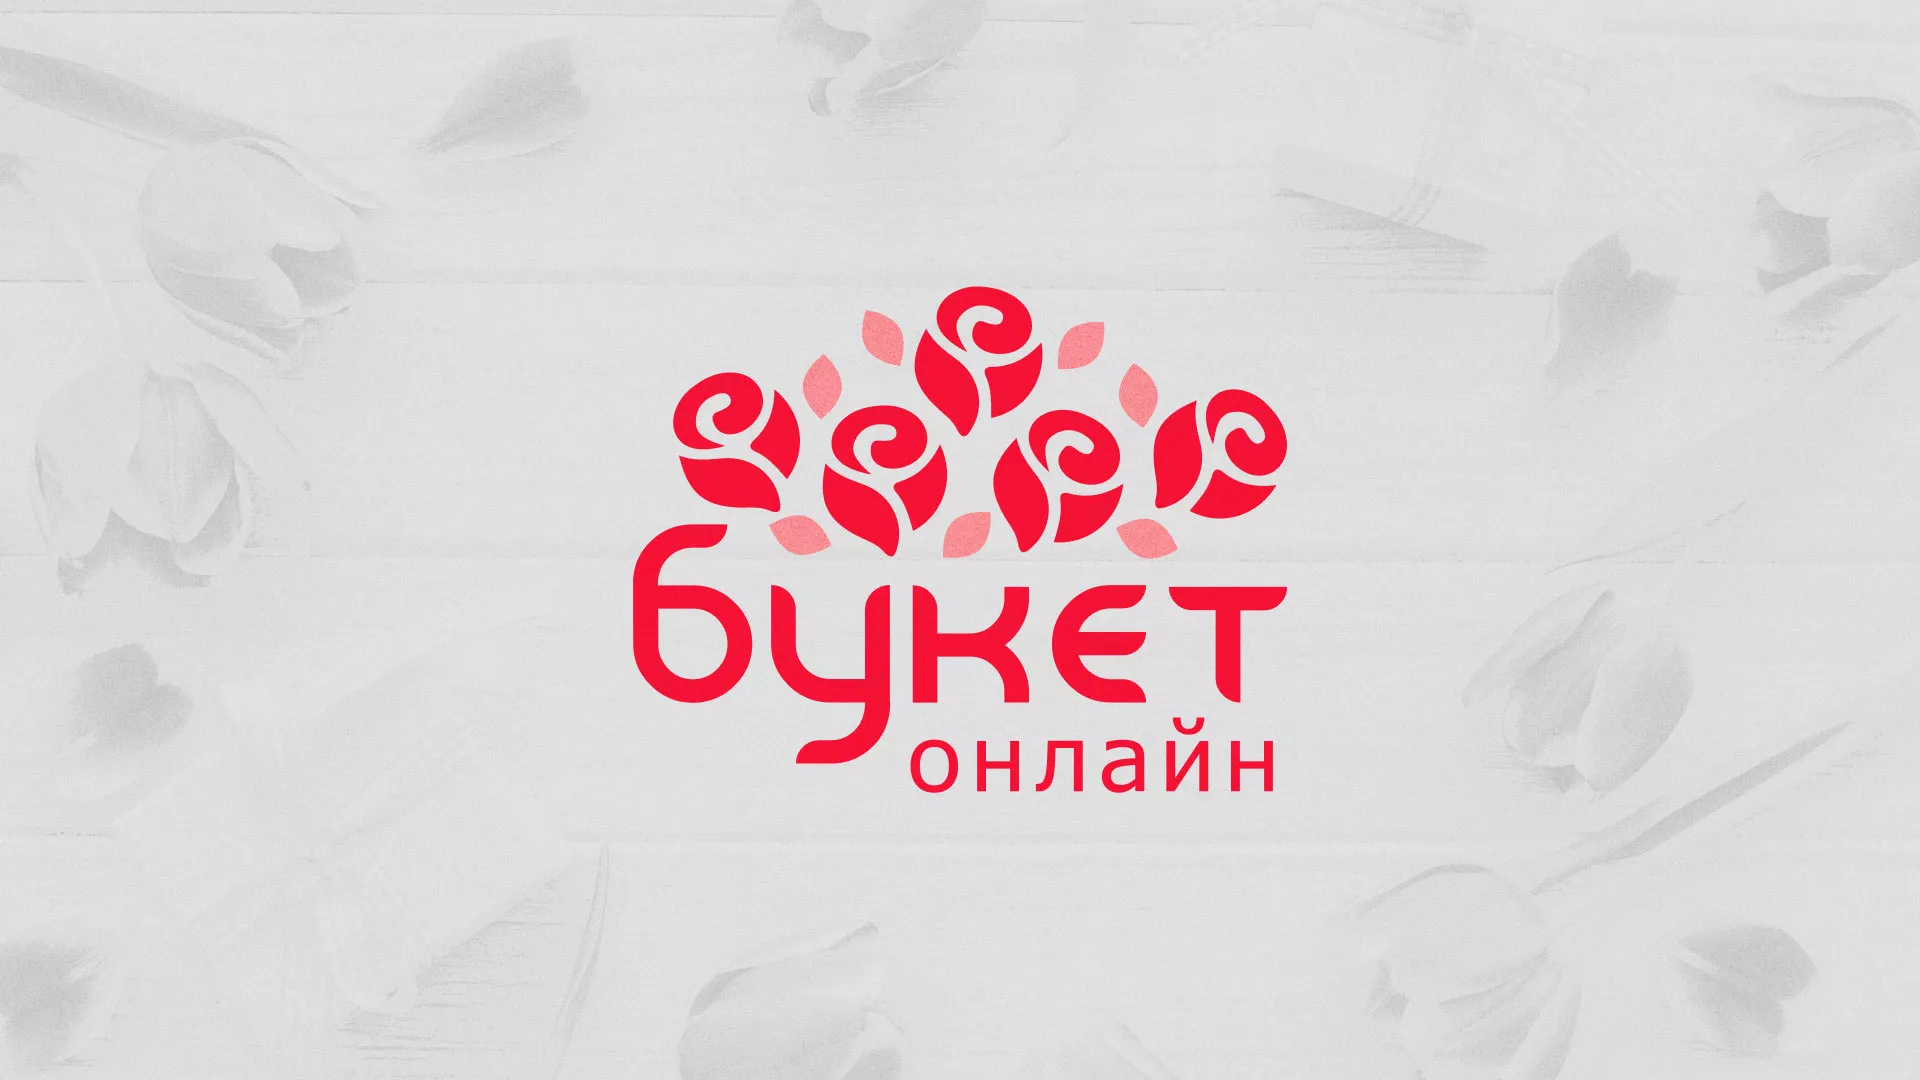 Создание интернет-магазина «Букет-онлайн» по цветам в Белозерске